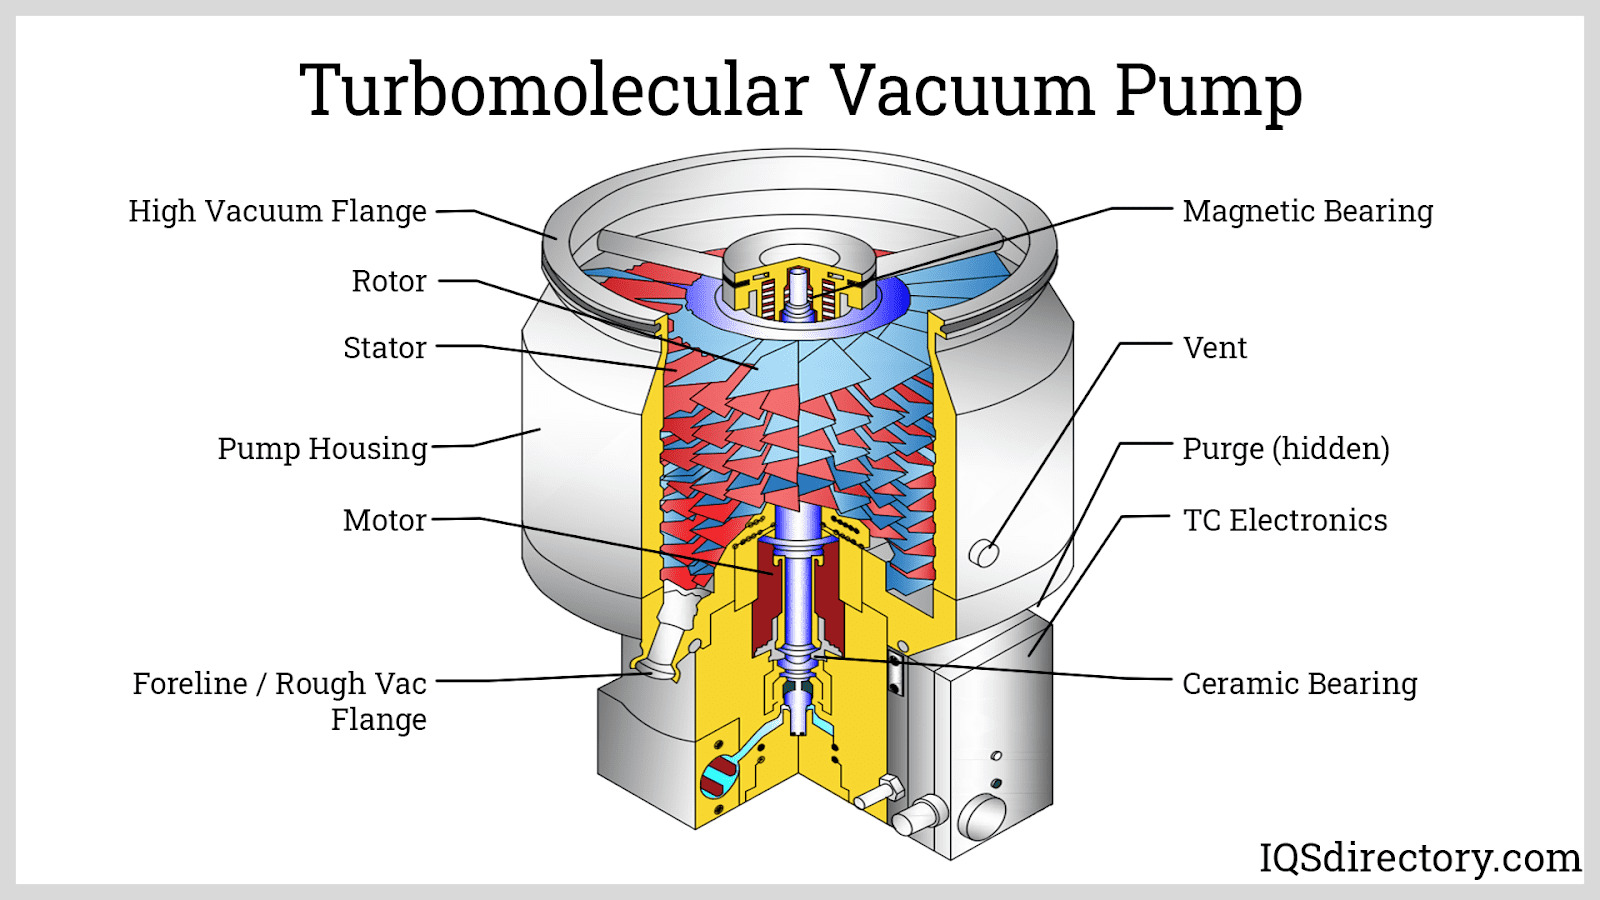 Turbomolecular Vacuum Pump